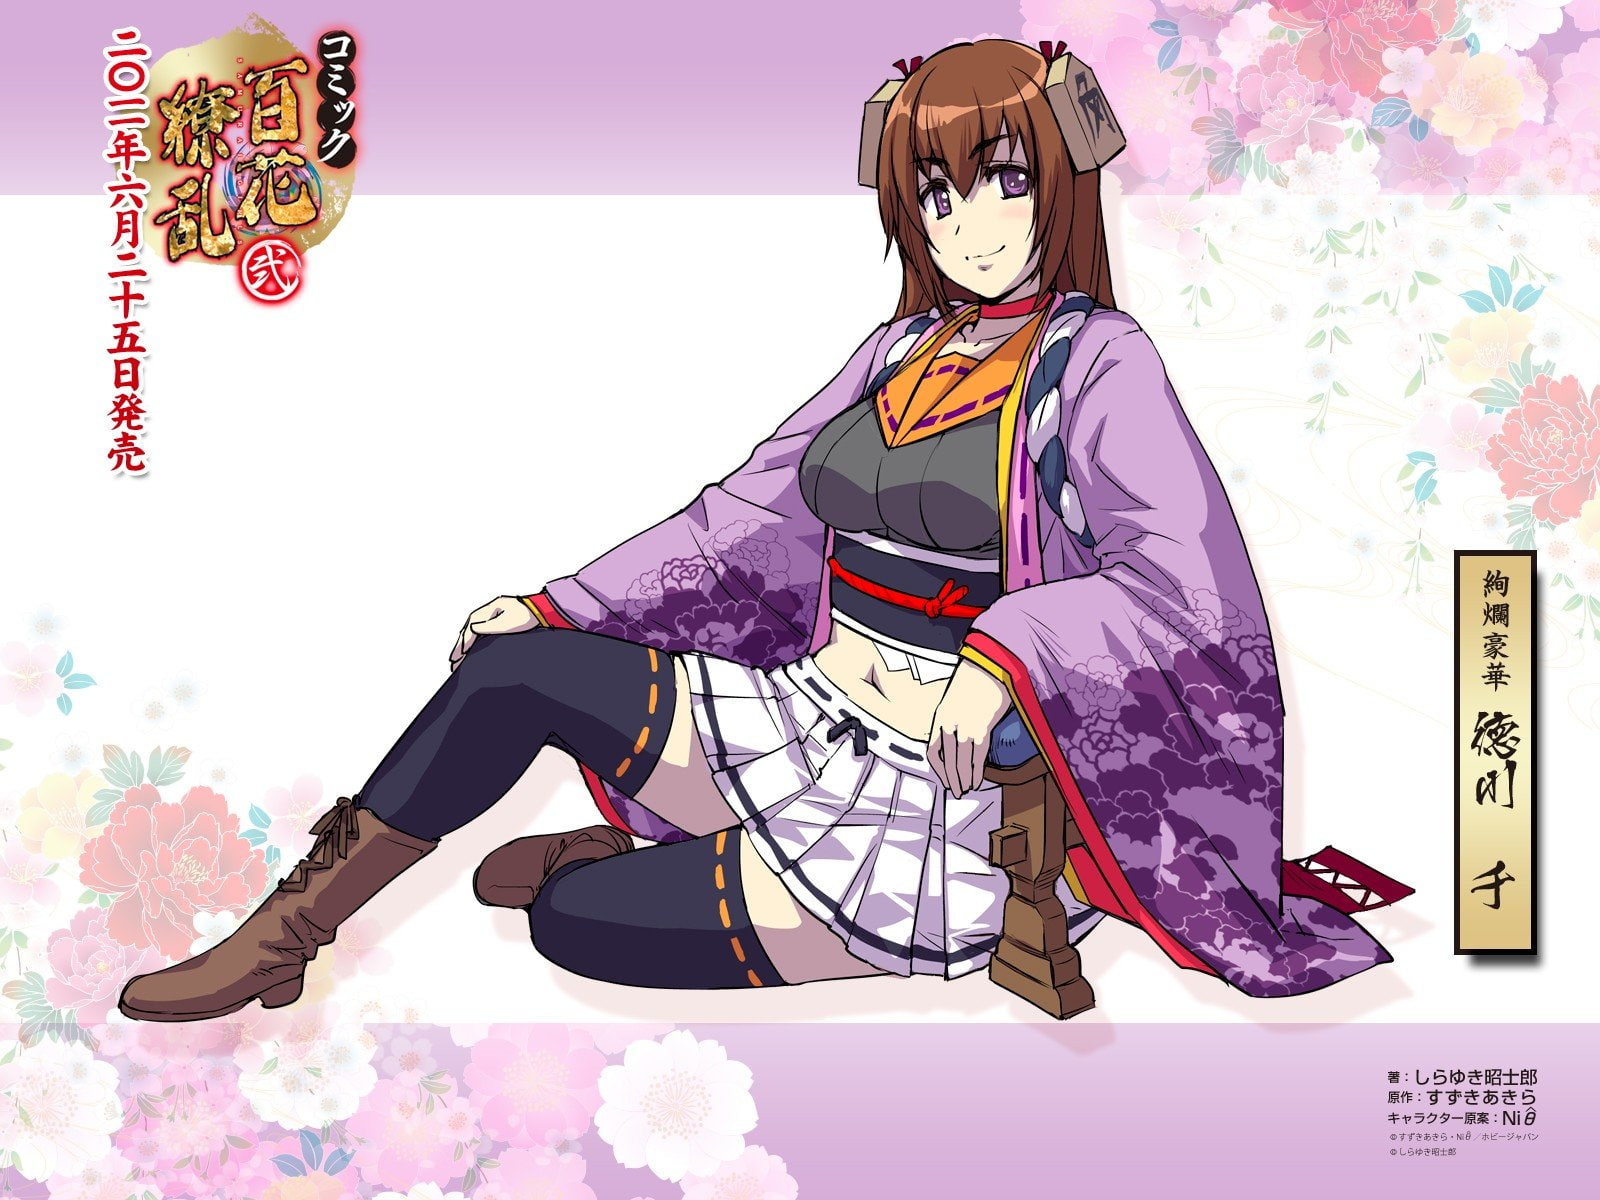 Anime Girls, highs, Hyakka Ryouran Samurai Girls, thigh, Tokugawa Sen